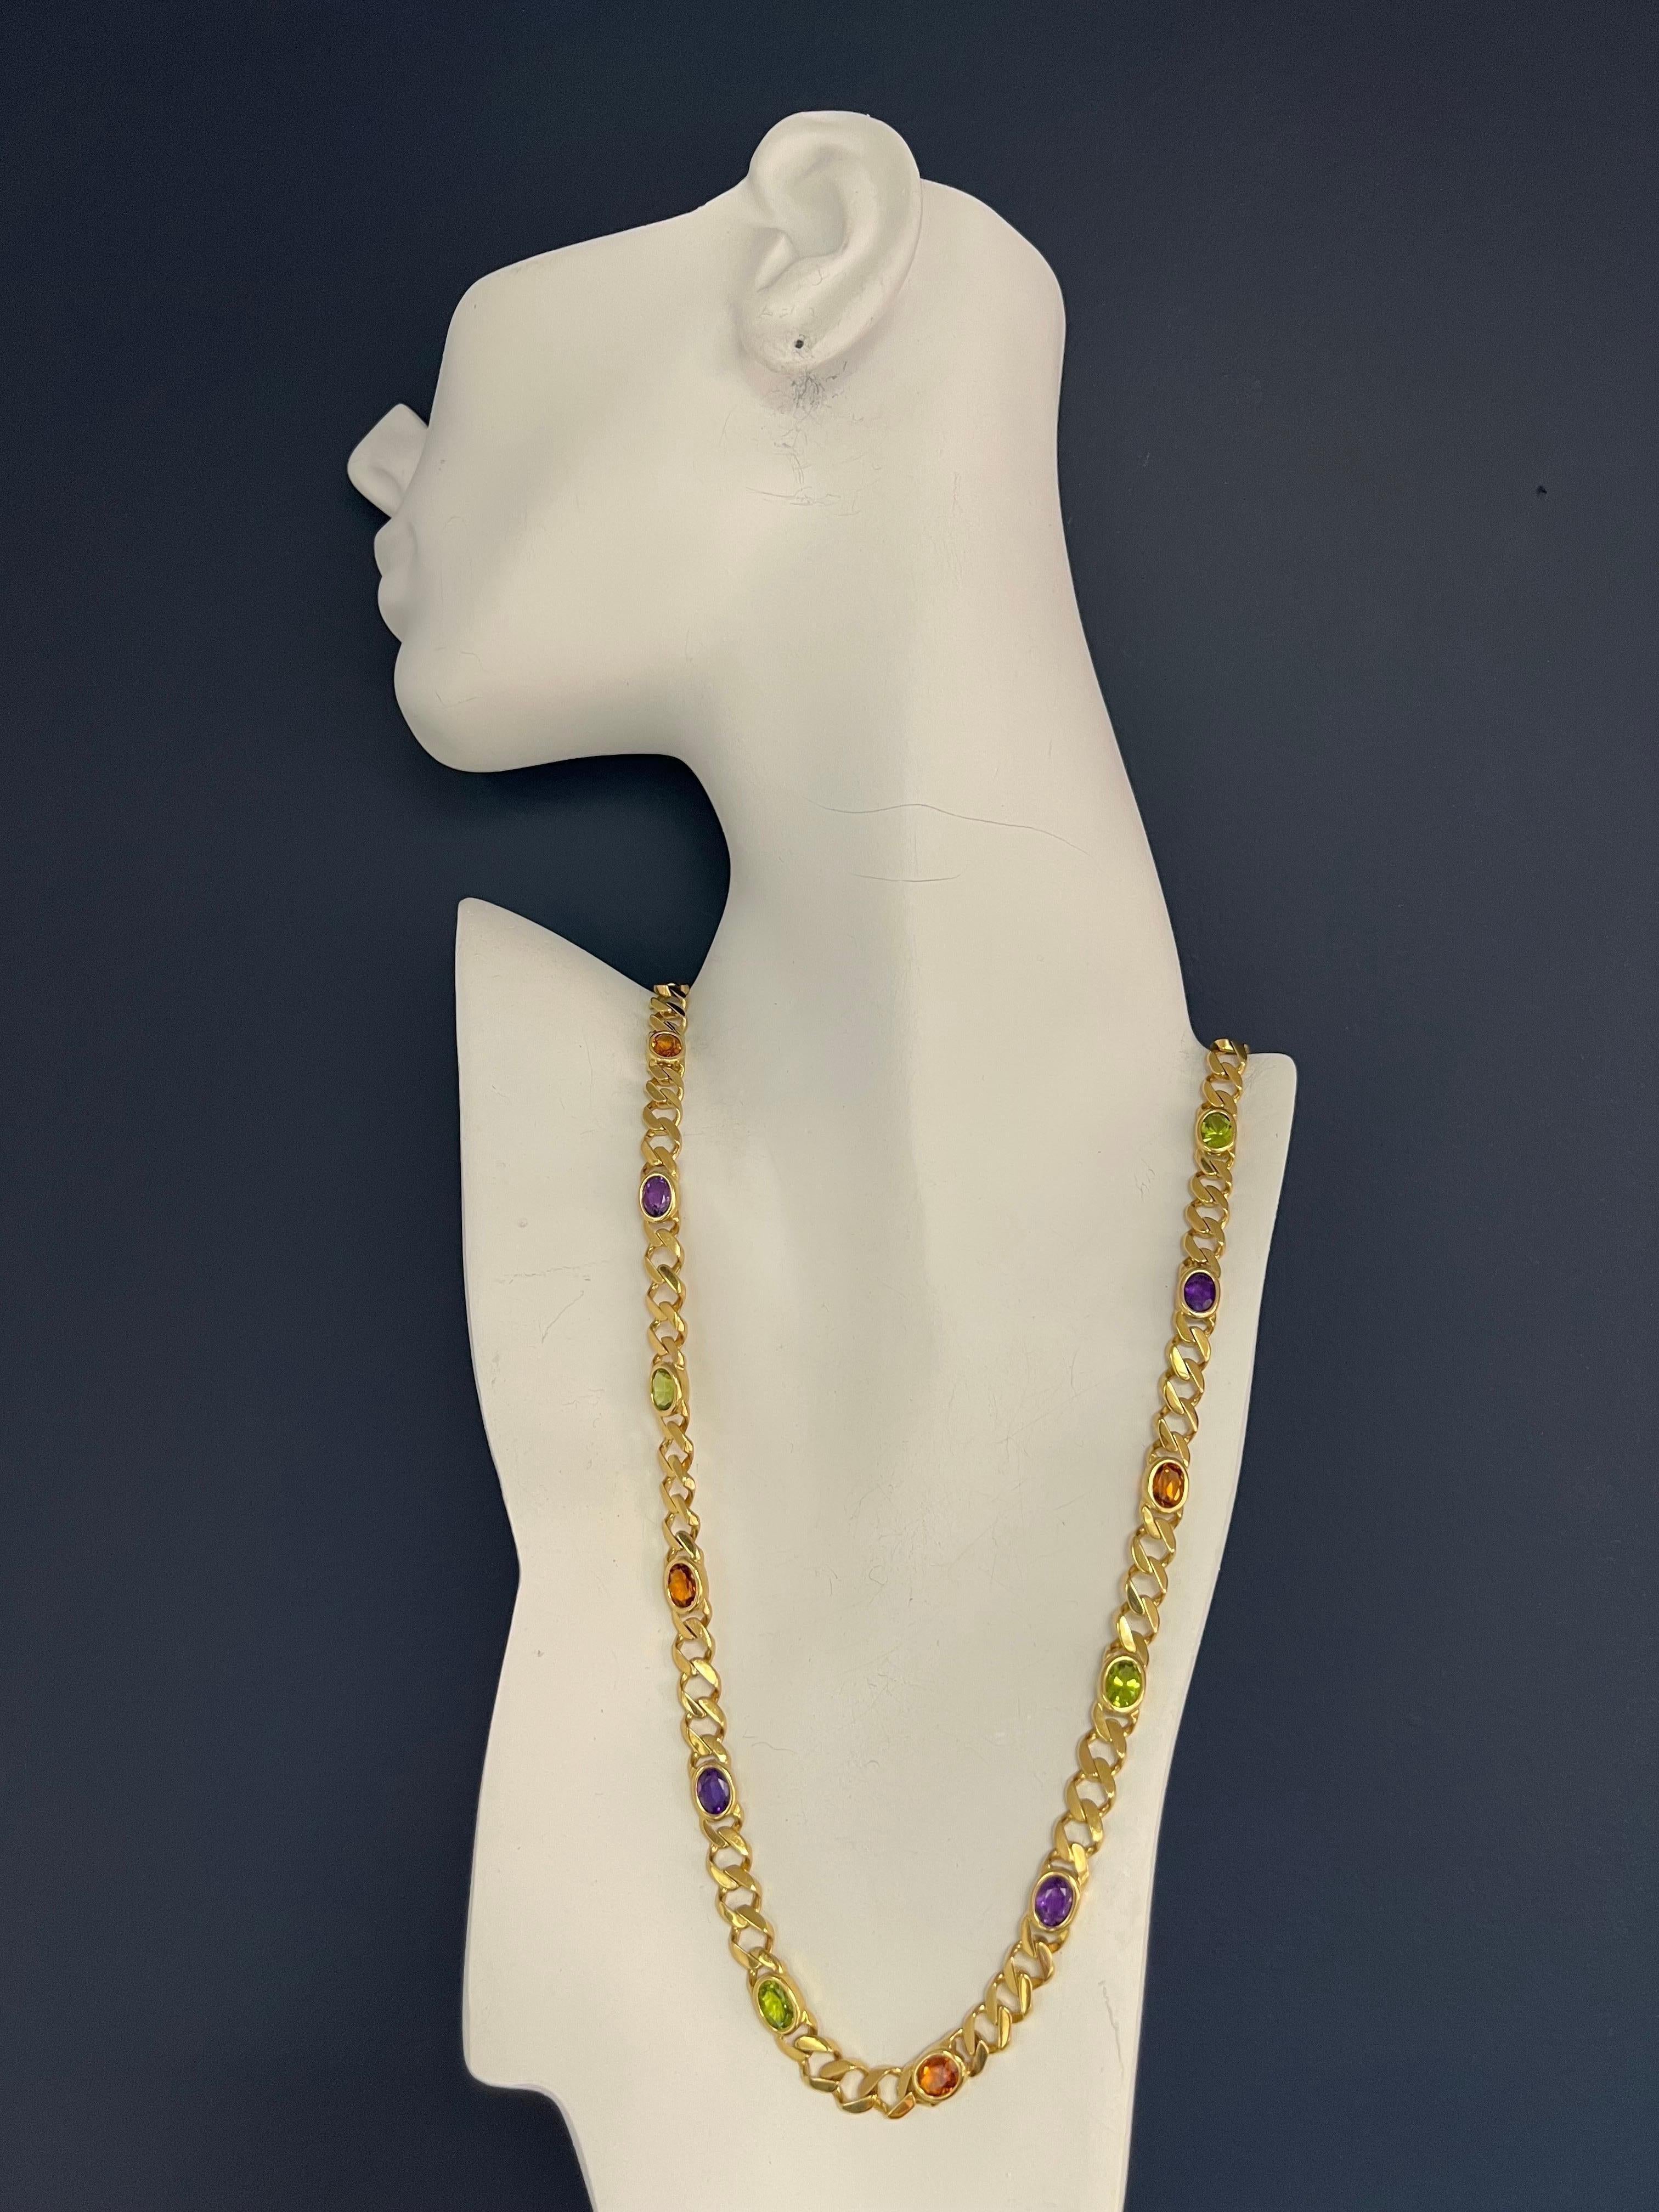 Magnificent Retro 14k Gelbgold Halskette & Armband SET. Das Stück ist mit 26 Karat (ungefähr) ovalem Citrin, Amethyst und Peridot besetzt. Circa 1980.

Die Halskette ist 24